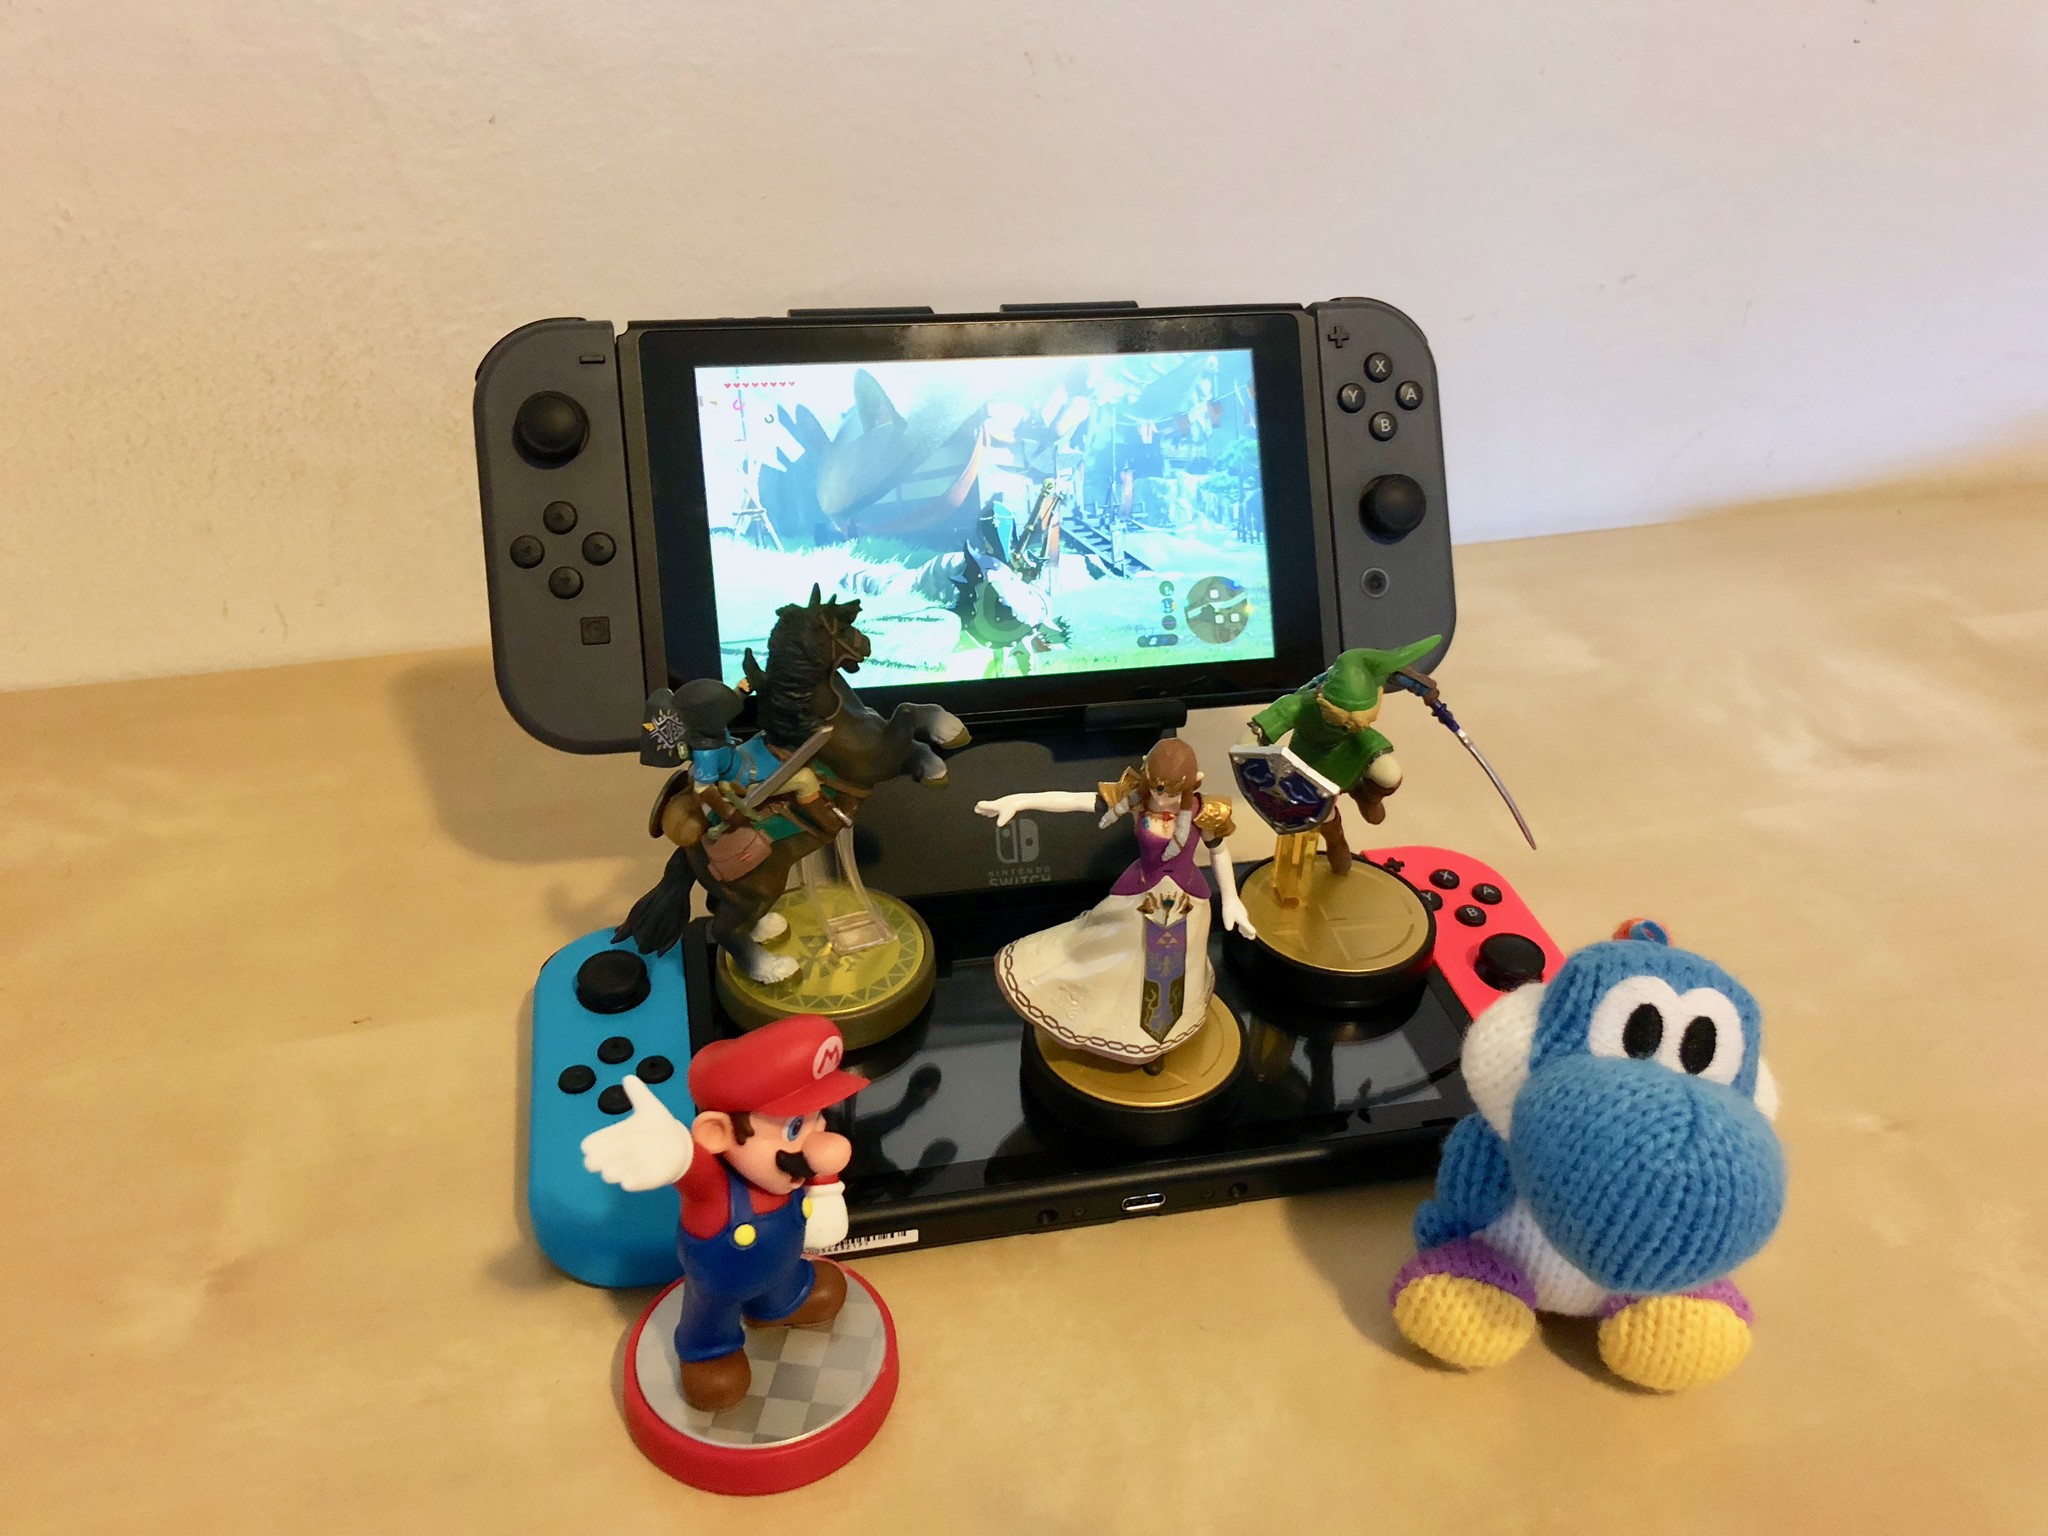 Sharing amiibo on Nintendo Switch